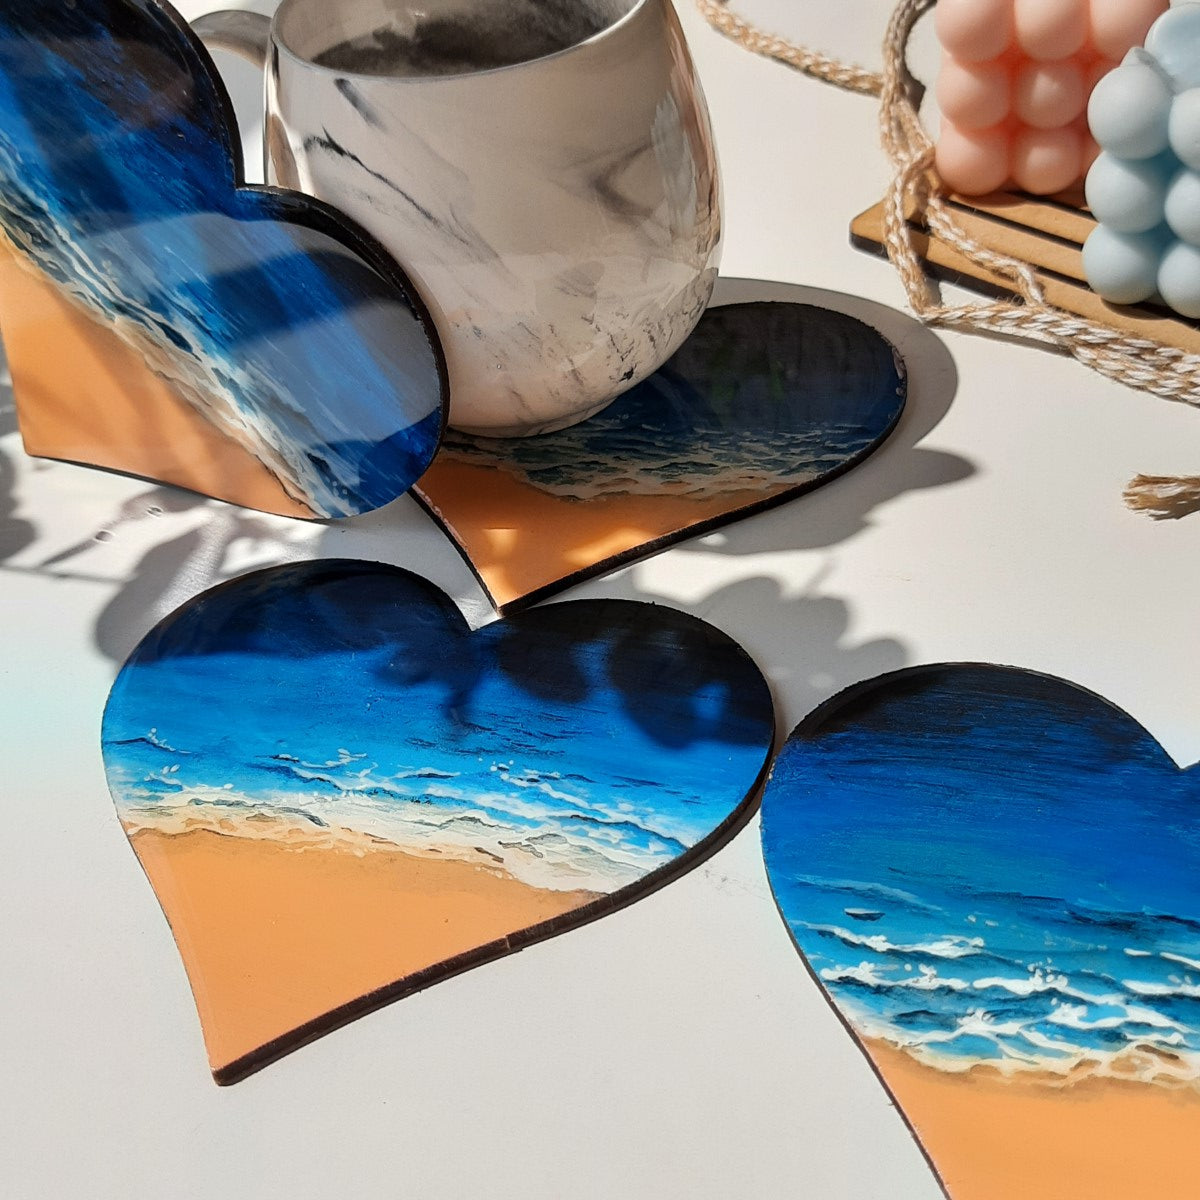 Heart Shaped Island Coasters (Set of 4)